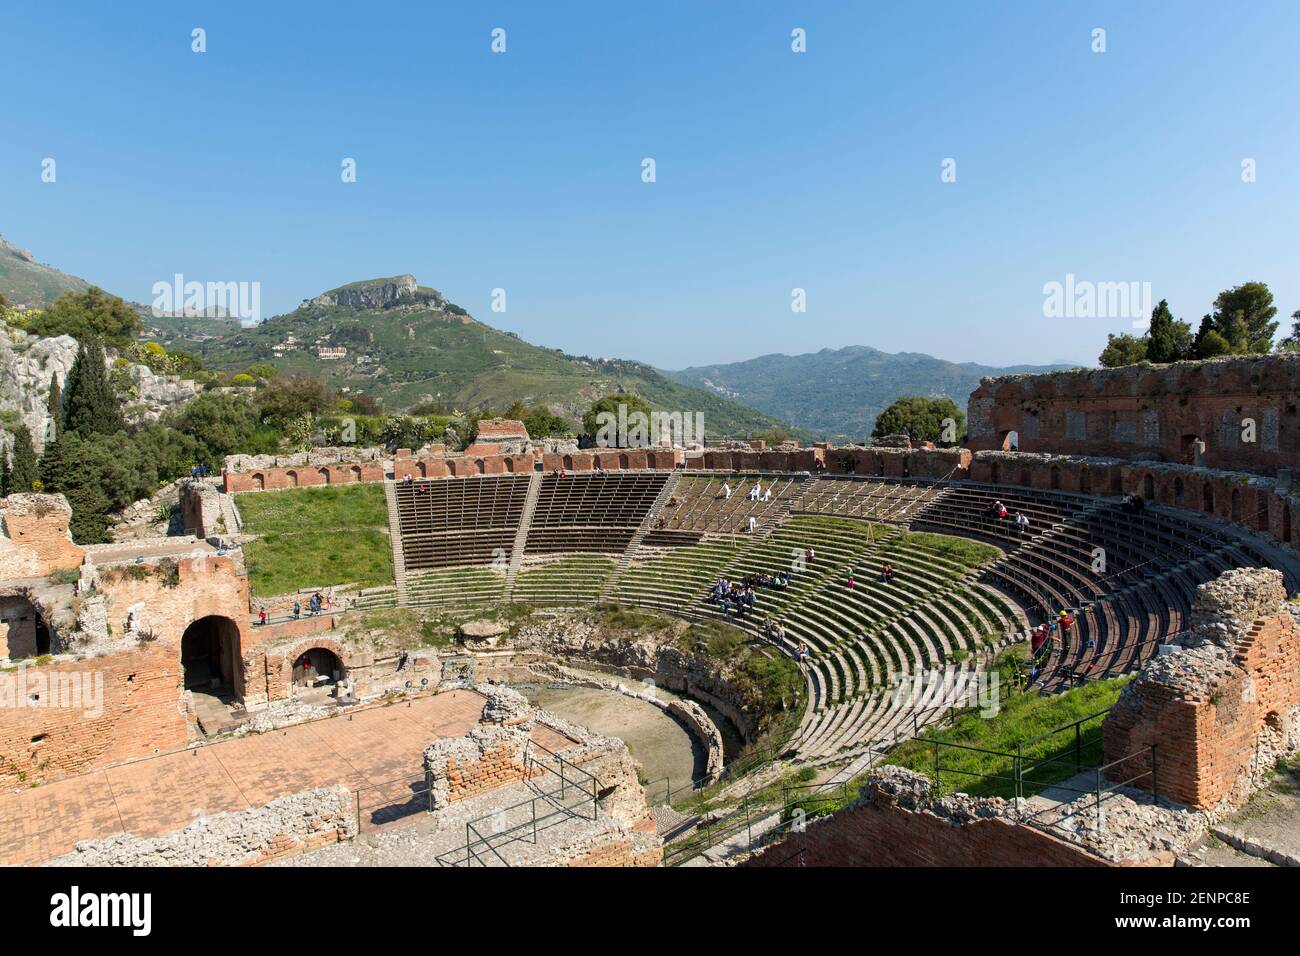 Italien, Sizilien, Taormina, das griechische Theater, mit einem Durchmesser von 120 Metern (390 ft) ist dieses Theater das zweitgrößte seiner Art in Sizilien Stockfoto